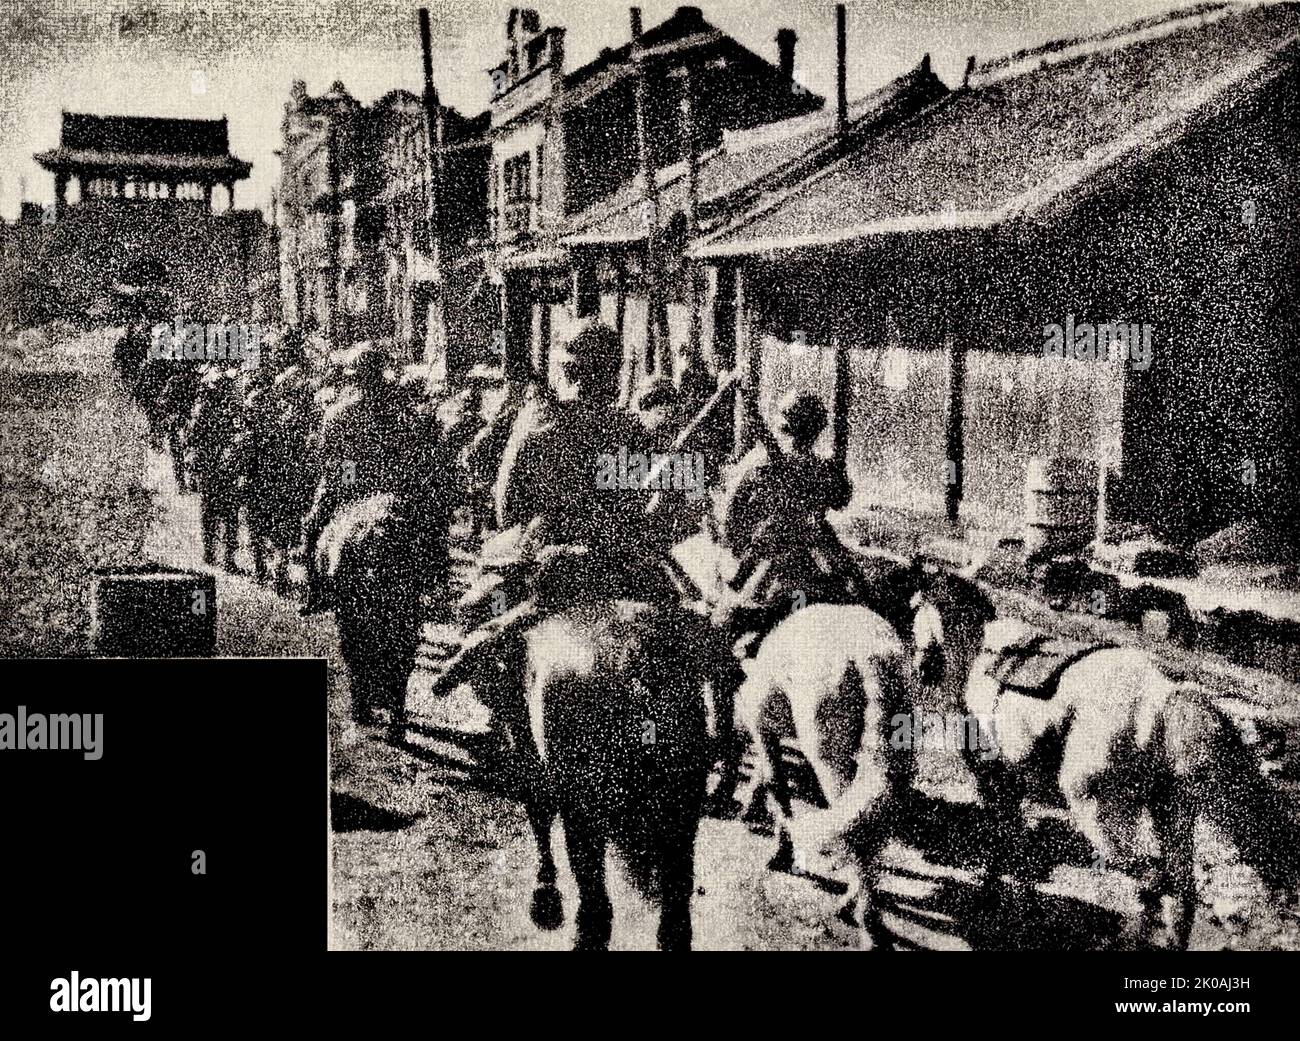 Japanische Invasoren drangen durch das Westtor in die chinesische Stadt Shenyang ein. Dies wurde später als der Mukden-Vorfall oder der mandschurische Vorfall bezeichnet, als Vorwand für die japanische Invasion der Mandschurei im Jahr 1931. Stockfoto